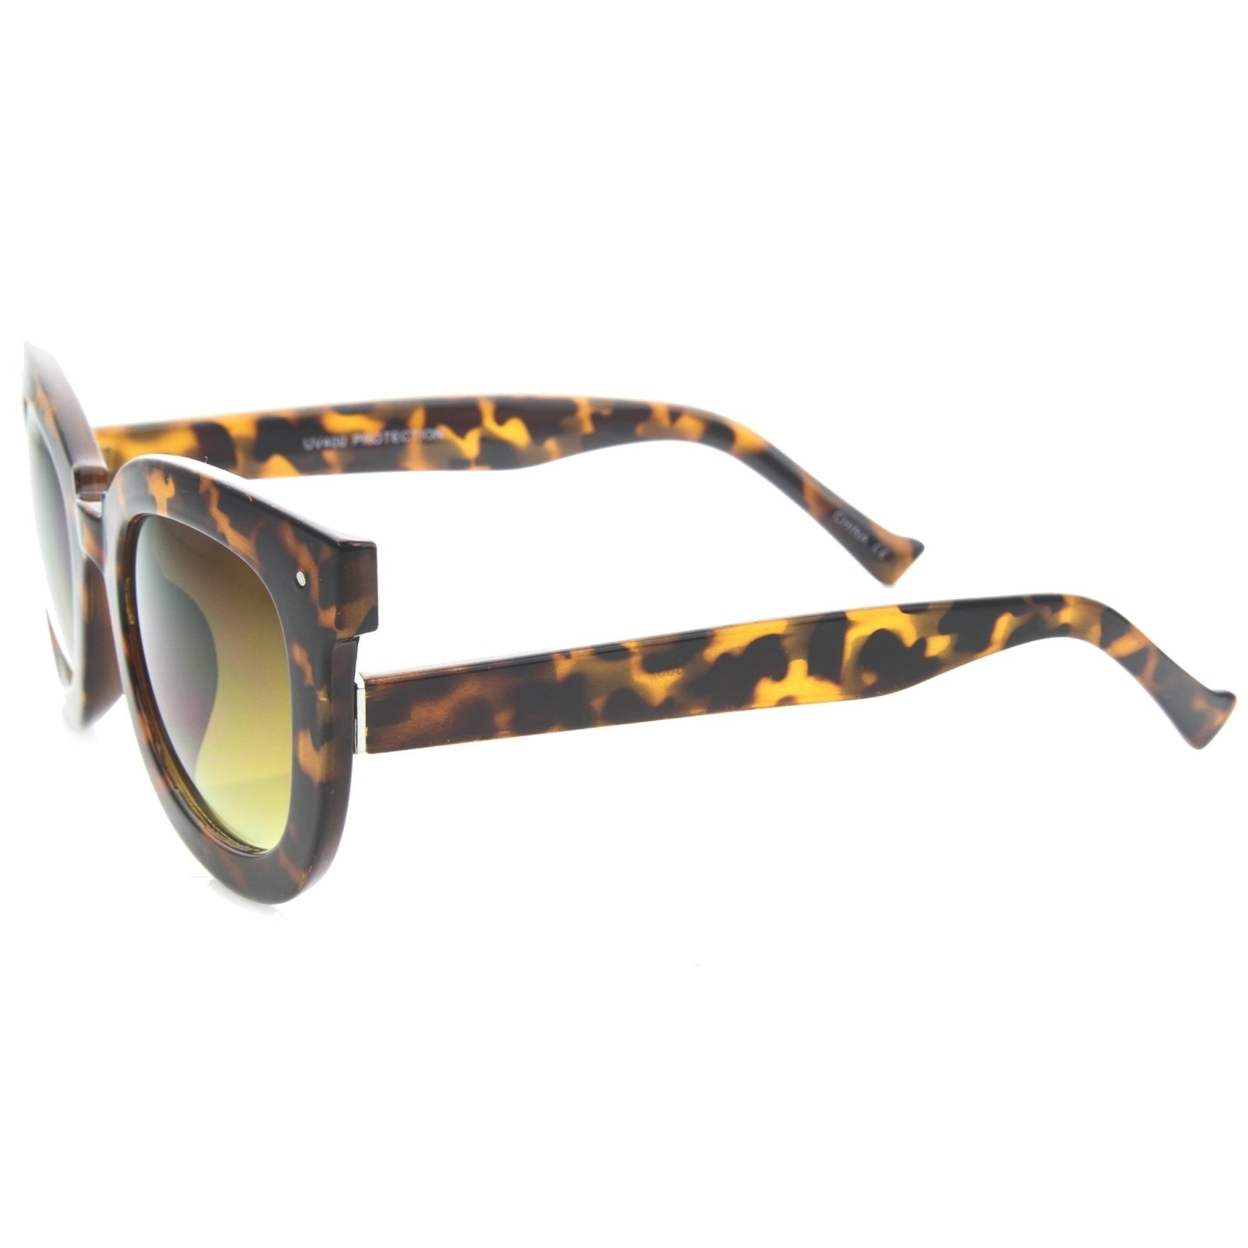 Womens Oversized Butterfly Horn Rimmed Round Cat Eye Sunglasses 67mm - Tortoise / Amber